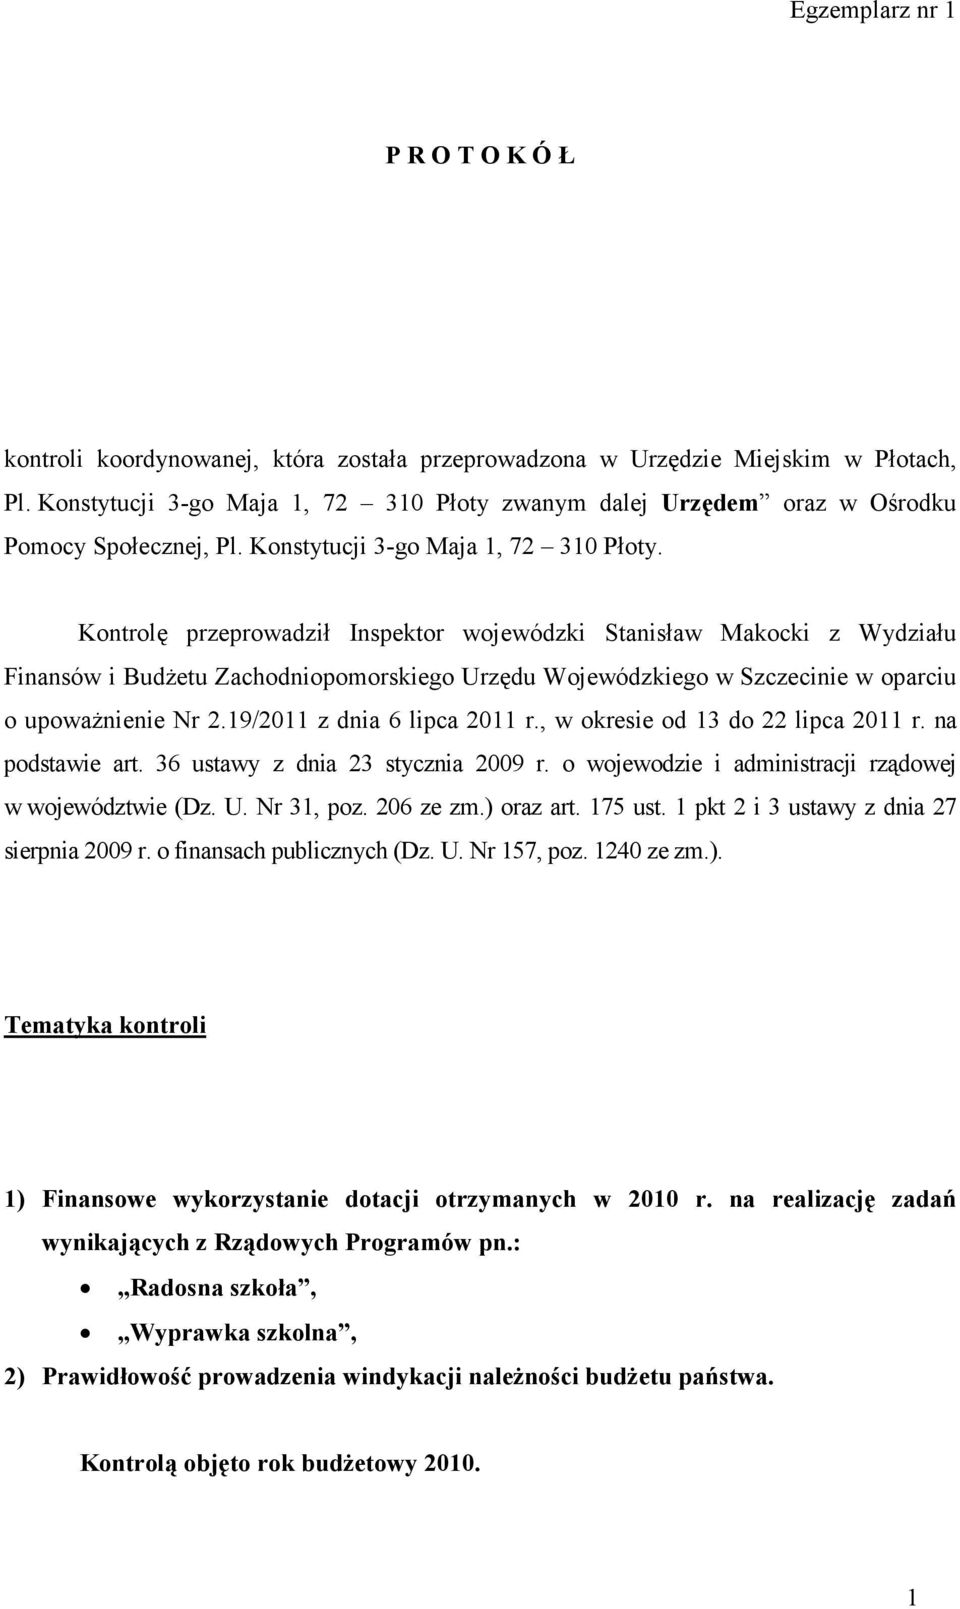 Kontrolę przeprowadził Inspektor wojewódzki Stanisław Makocki z Wydziału Finansów i Budżetu Zachodniopomorskiego Urzędu Wojewódzkiego w Szczecinie w oparciu o upoważnienie Nr 2.